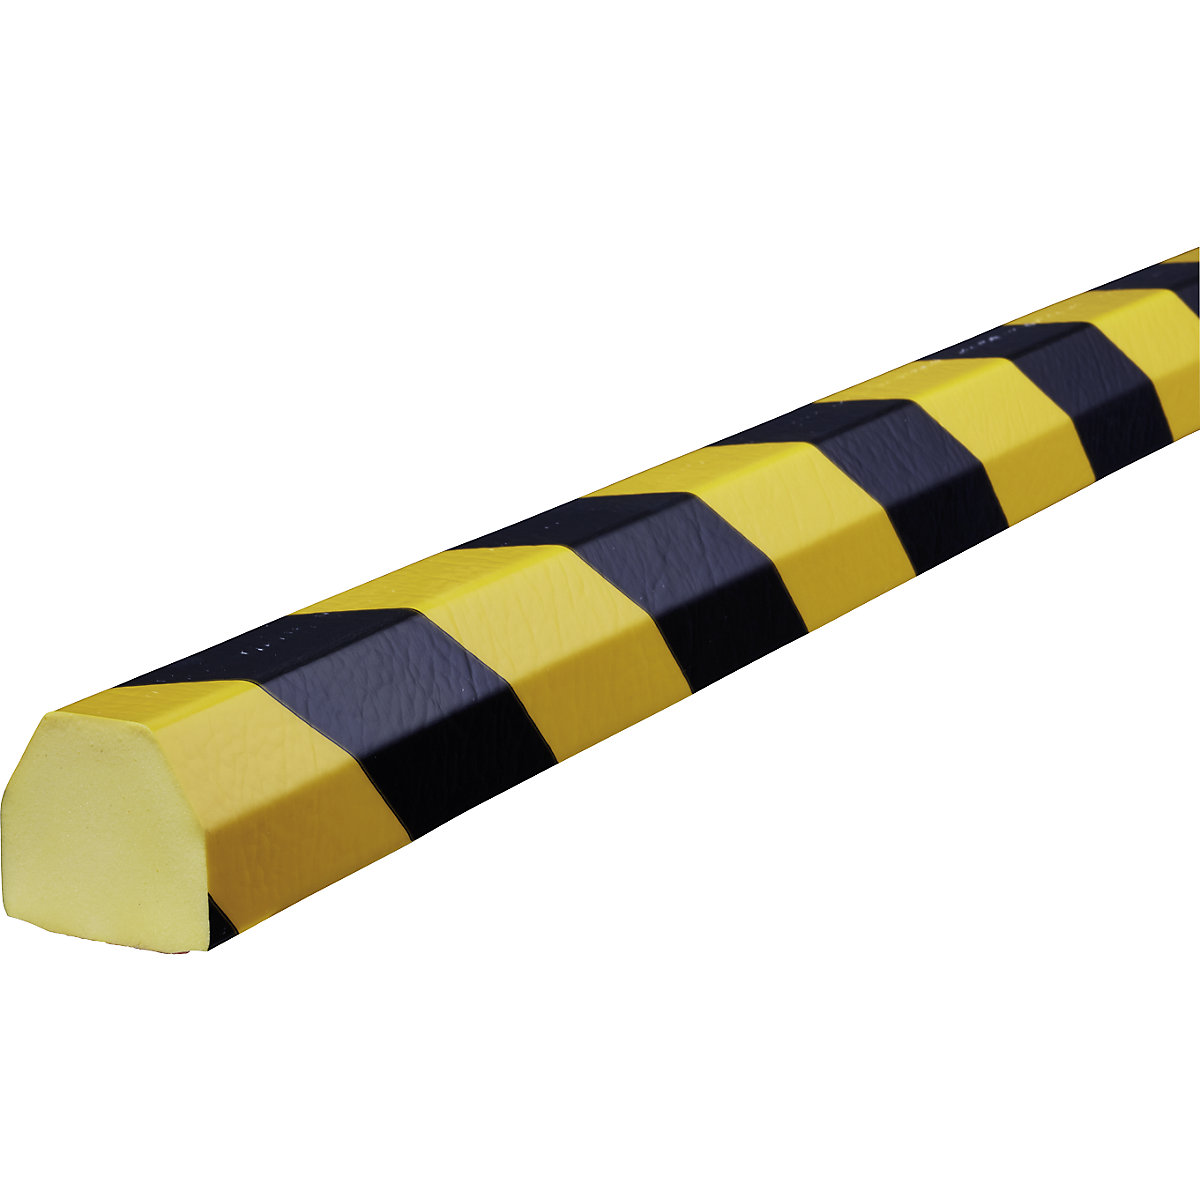 Zaščita površin Knuffi® – SHG, tip CC, 1 rola po 5 m, črno / rumene barve-18